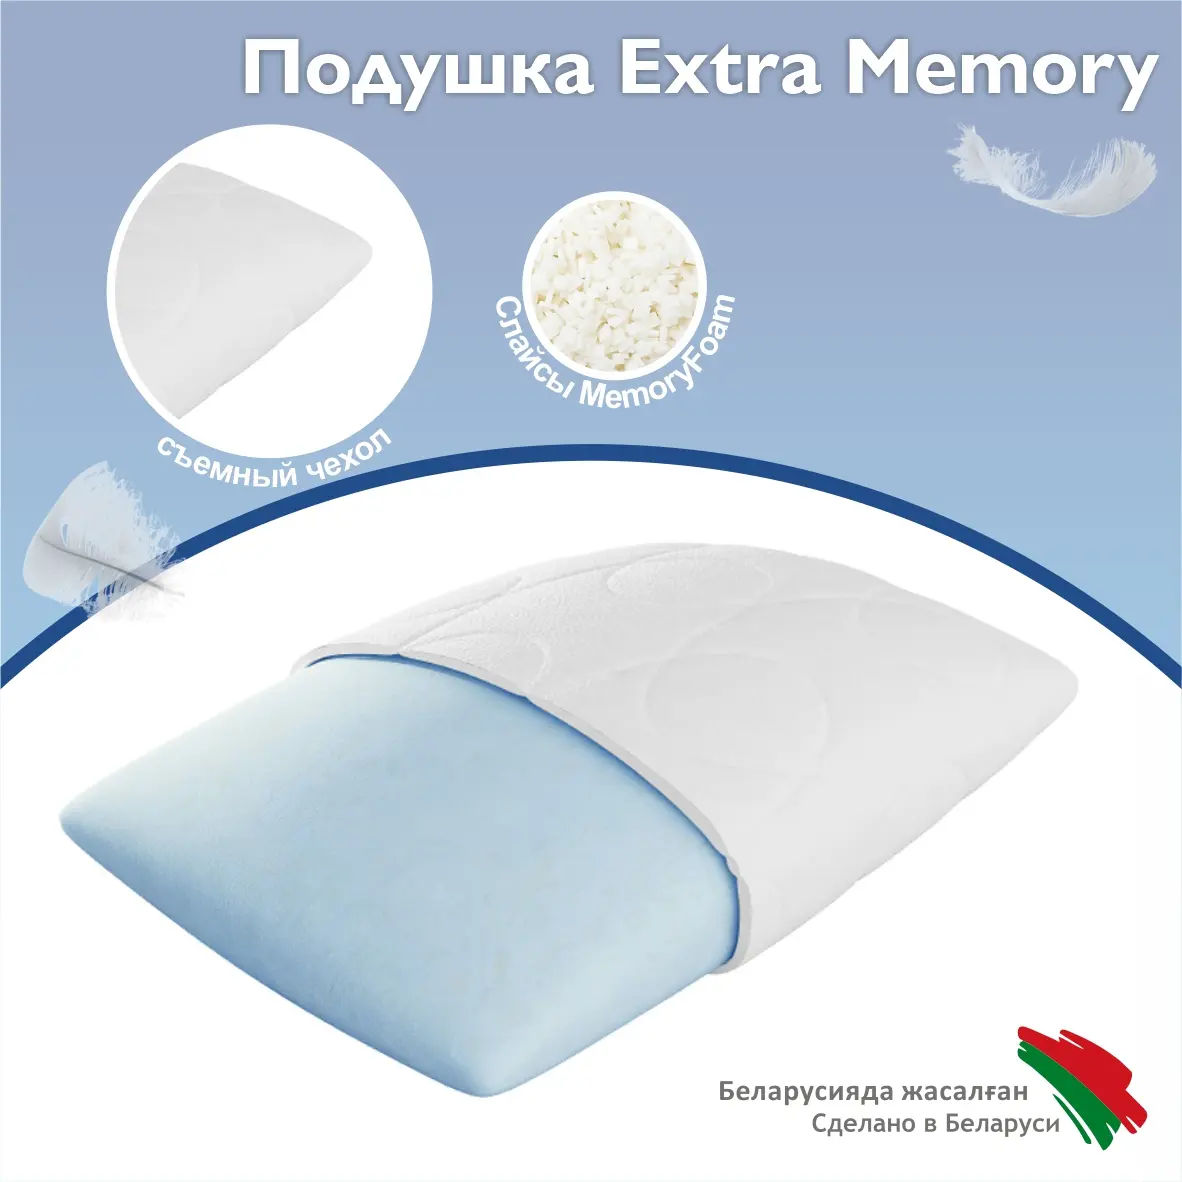 Подушка extra memory